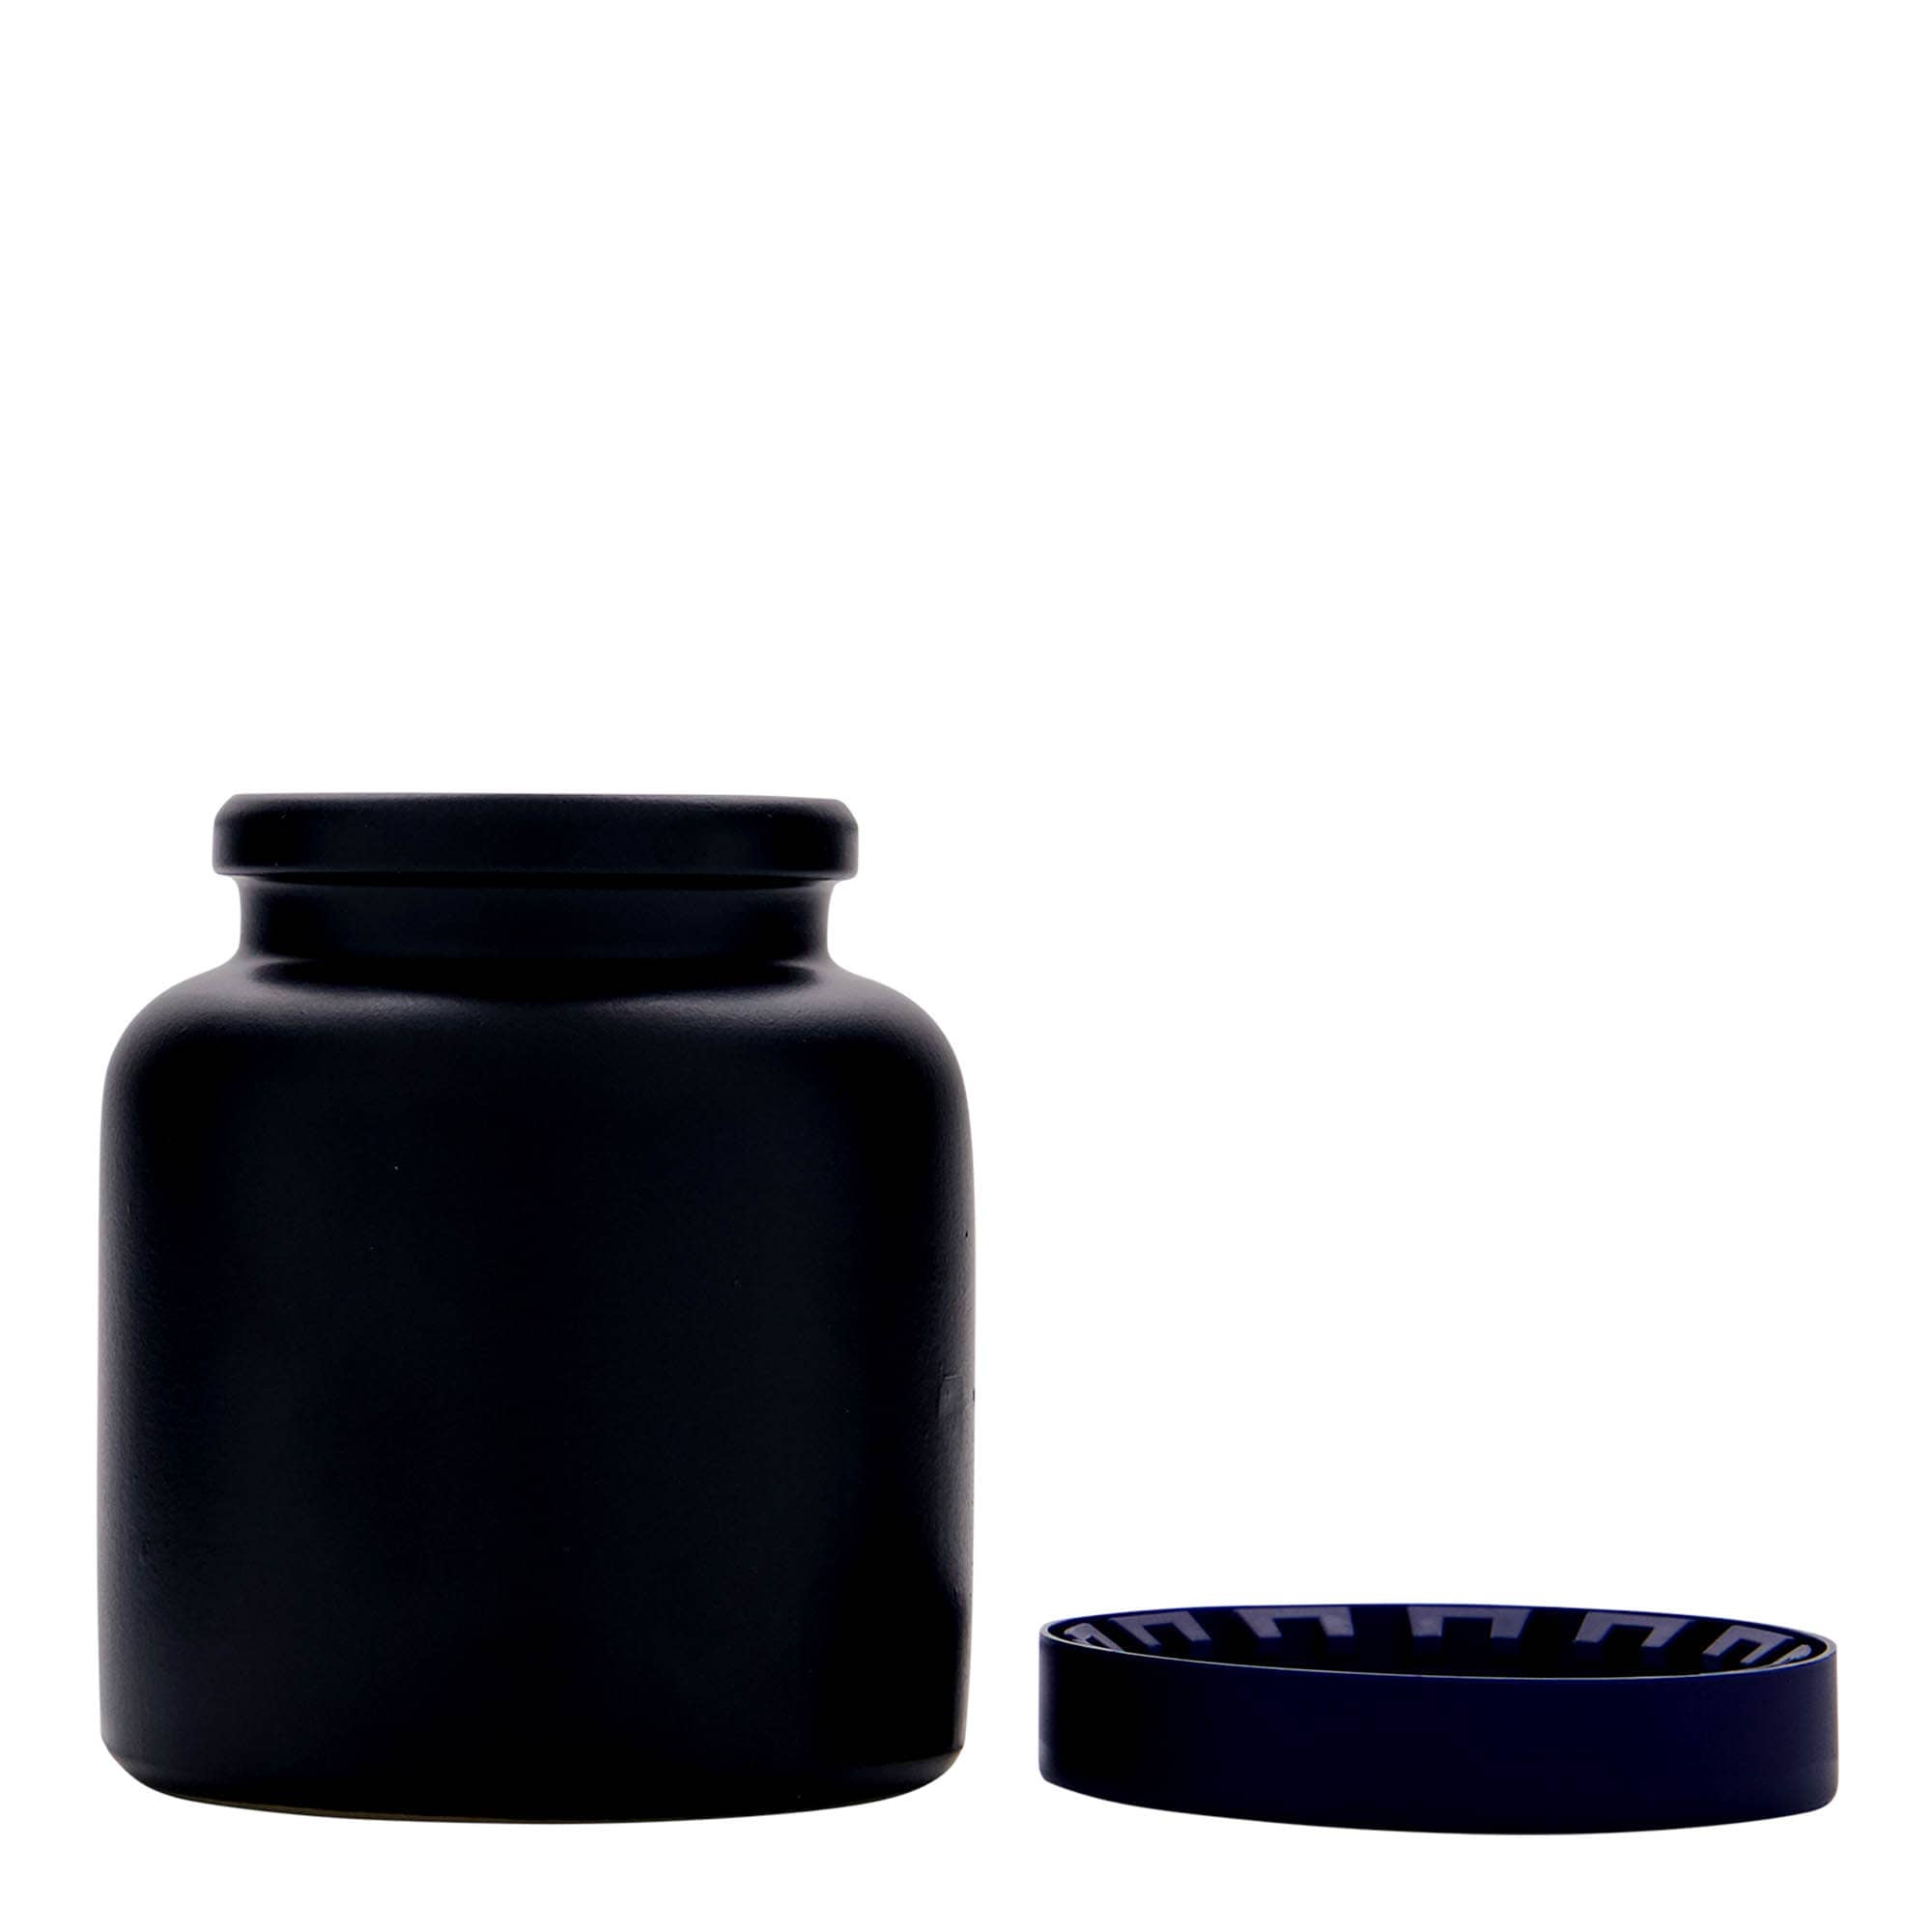 Kameninový hrnec 270 ml, keramika, černá, uzávěr: nasazovací víko